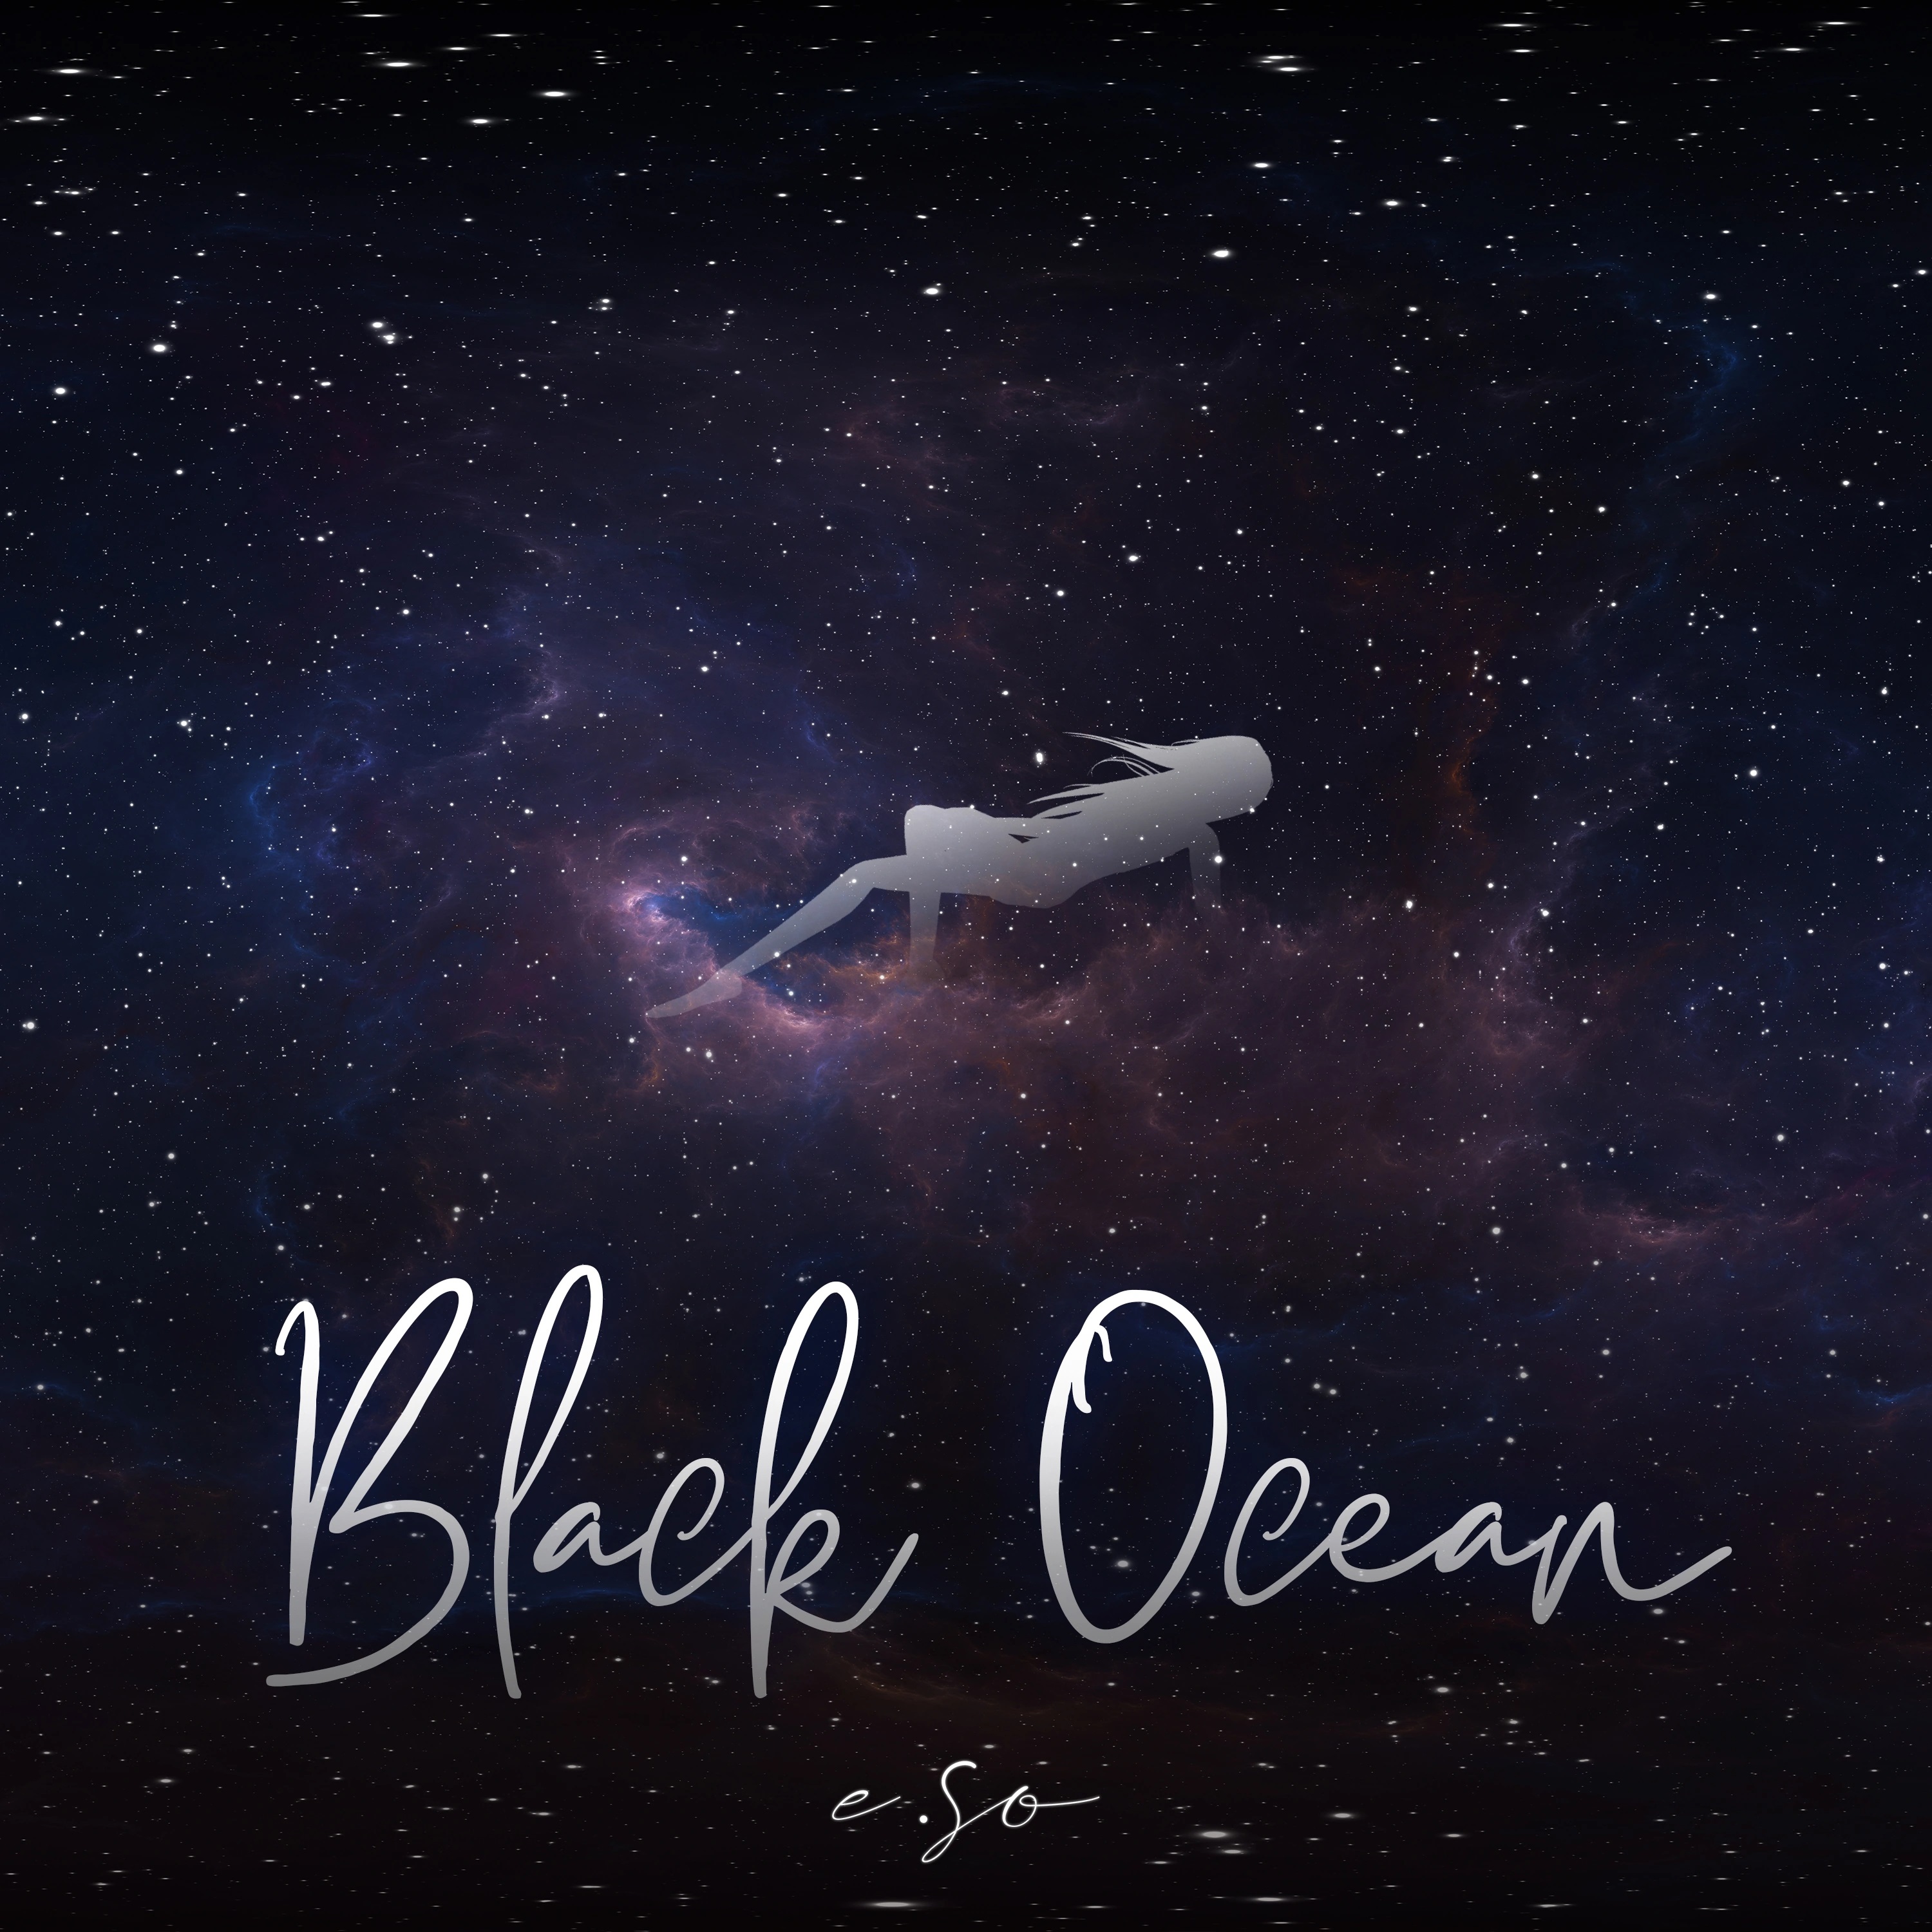 E.SO Black Ocean cover artwork